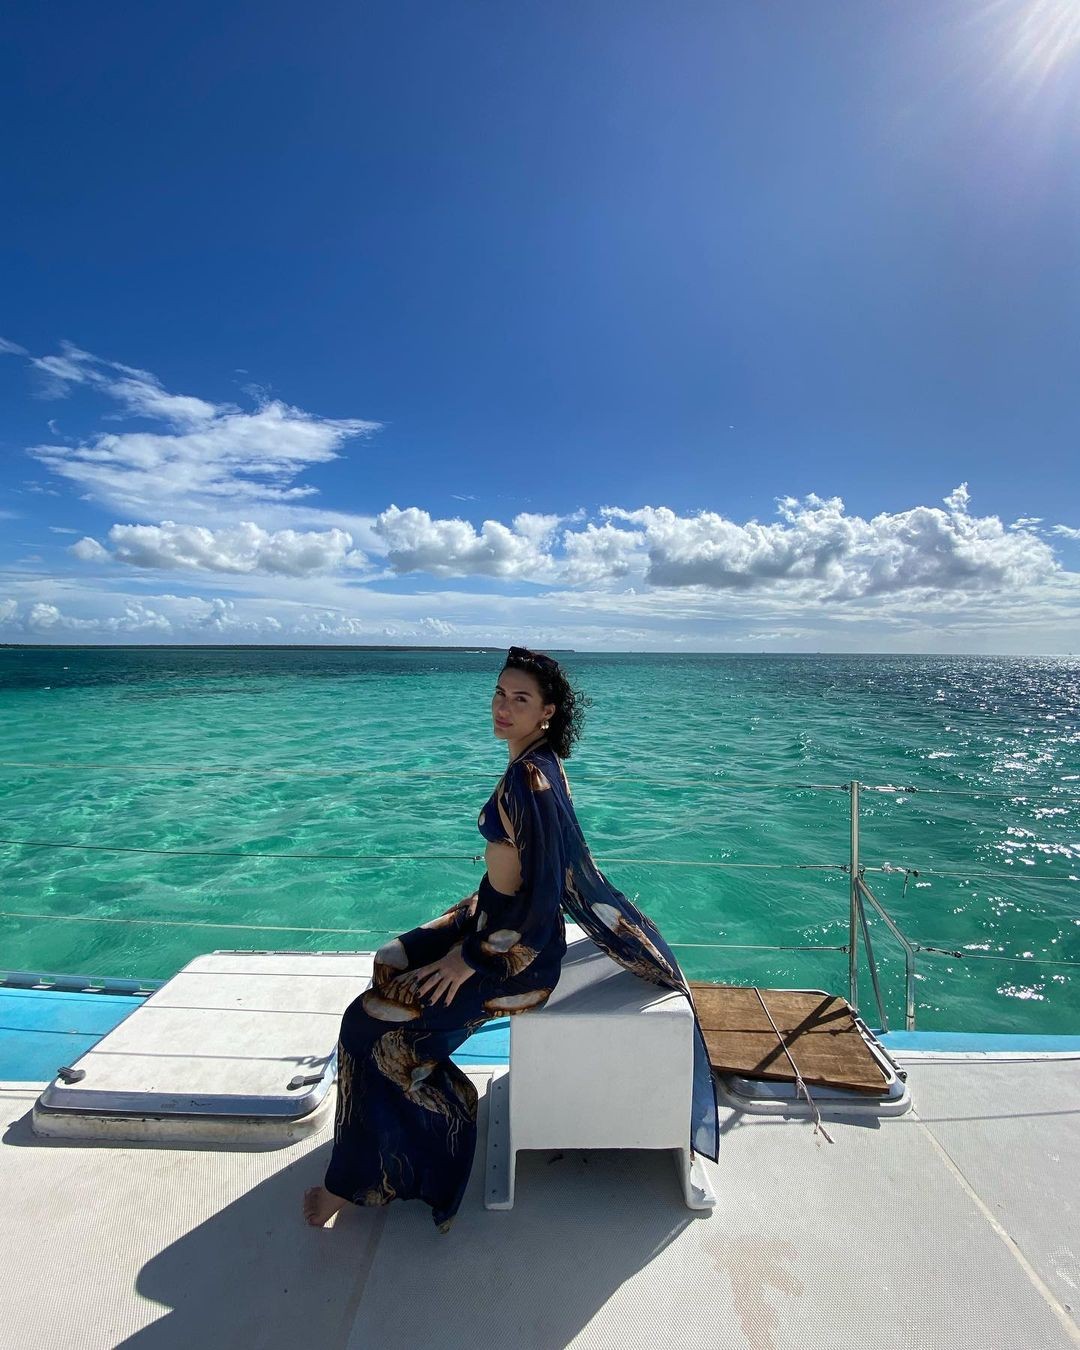 Lívian Aragão ganha elogios ao posar em cenário paradisíaco em ilha na República Dominicana (Foto: Reprodução/Instagram)